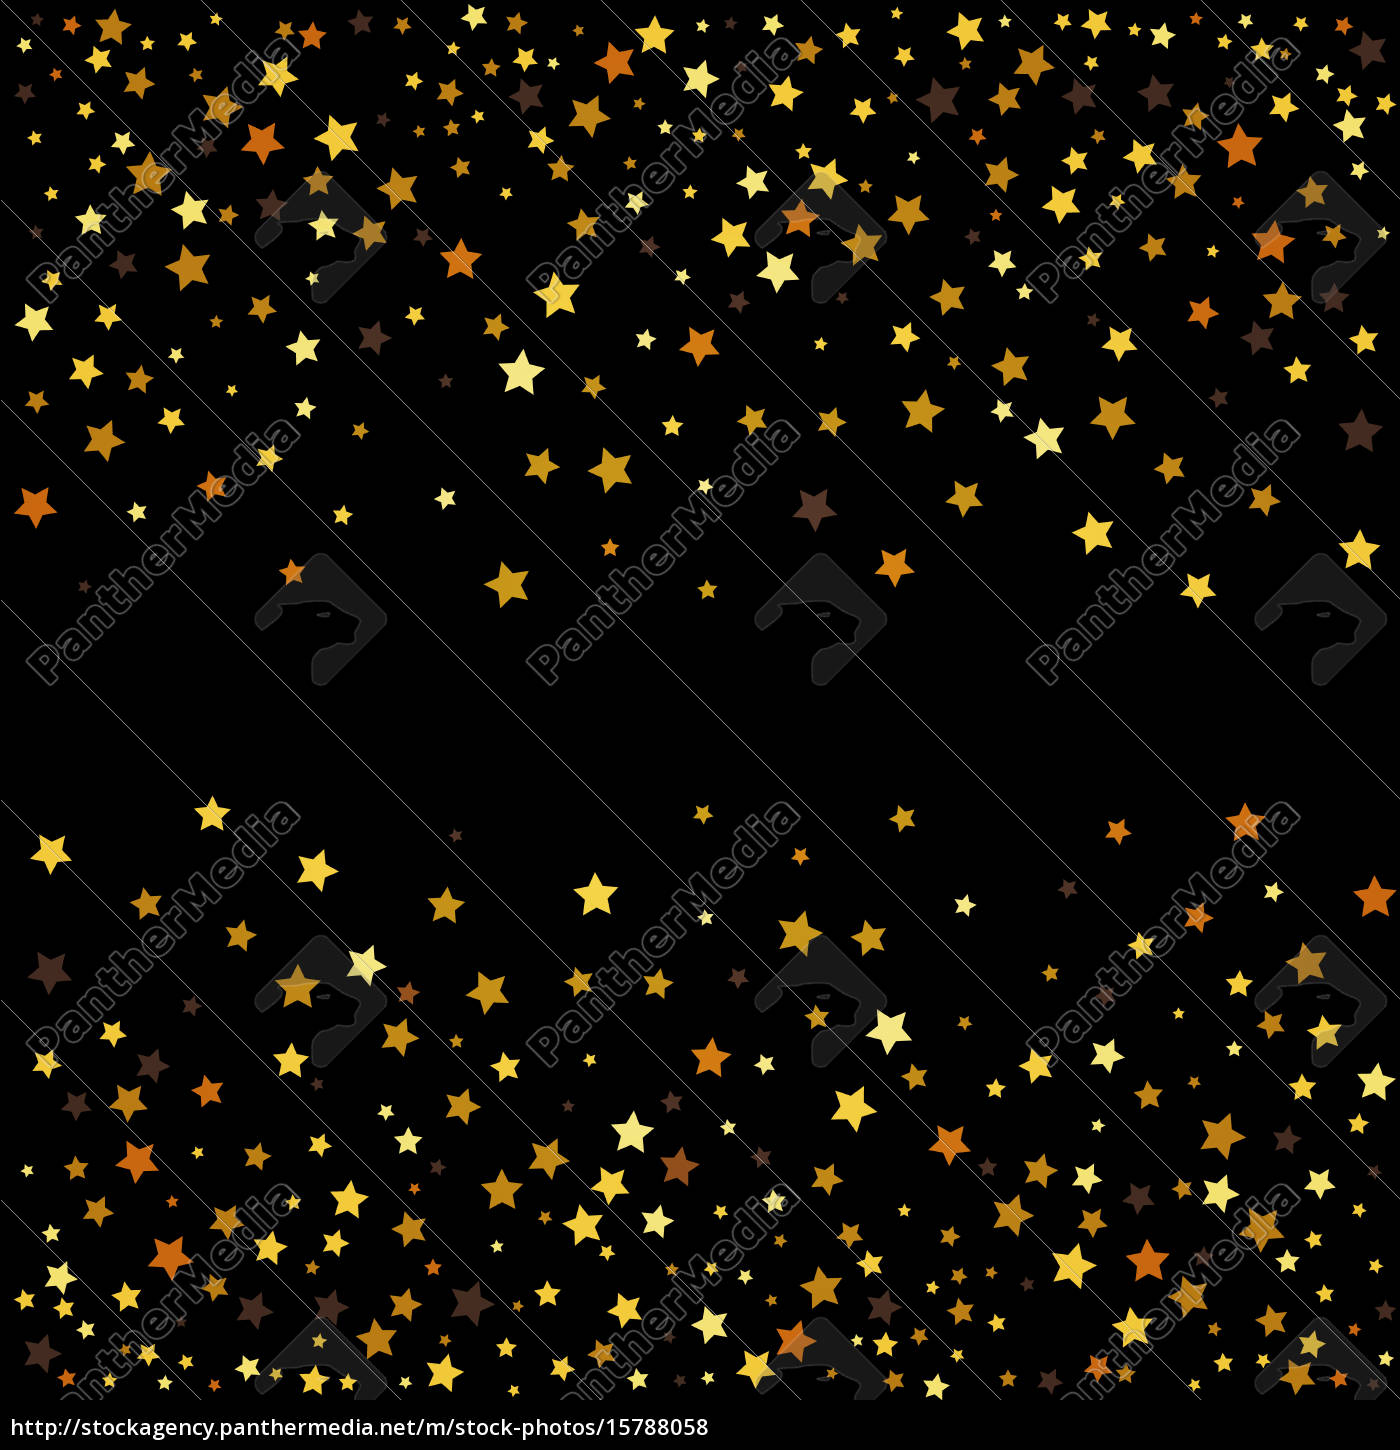 goldene glitzersterne auf schwarzem hintergrund. - Stockfoto #15788058